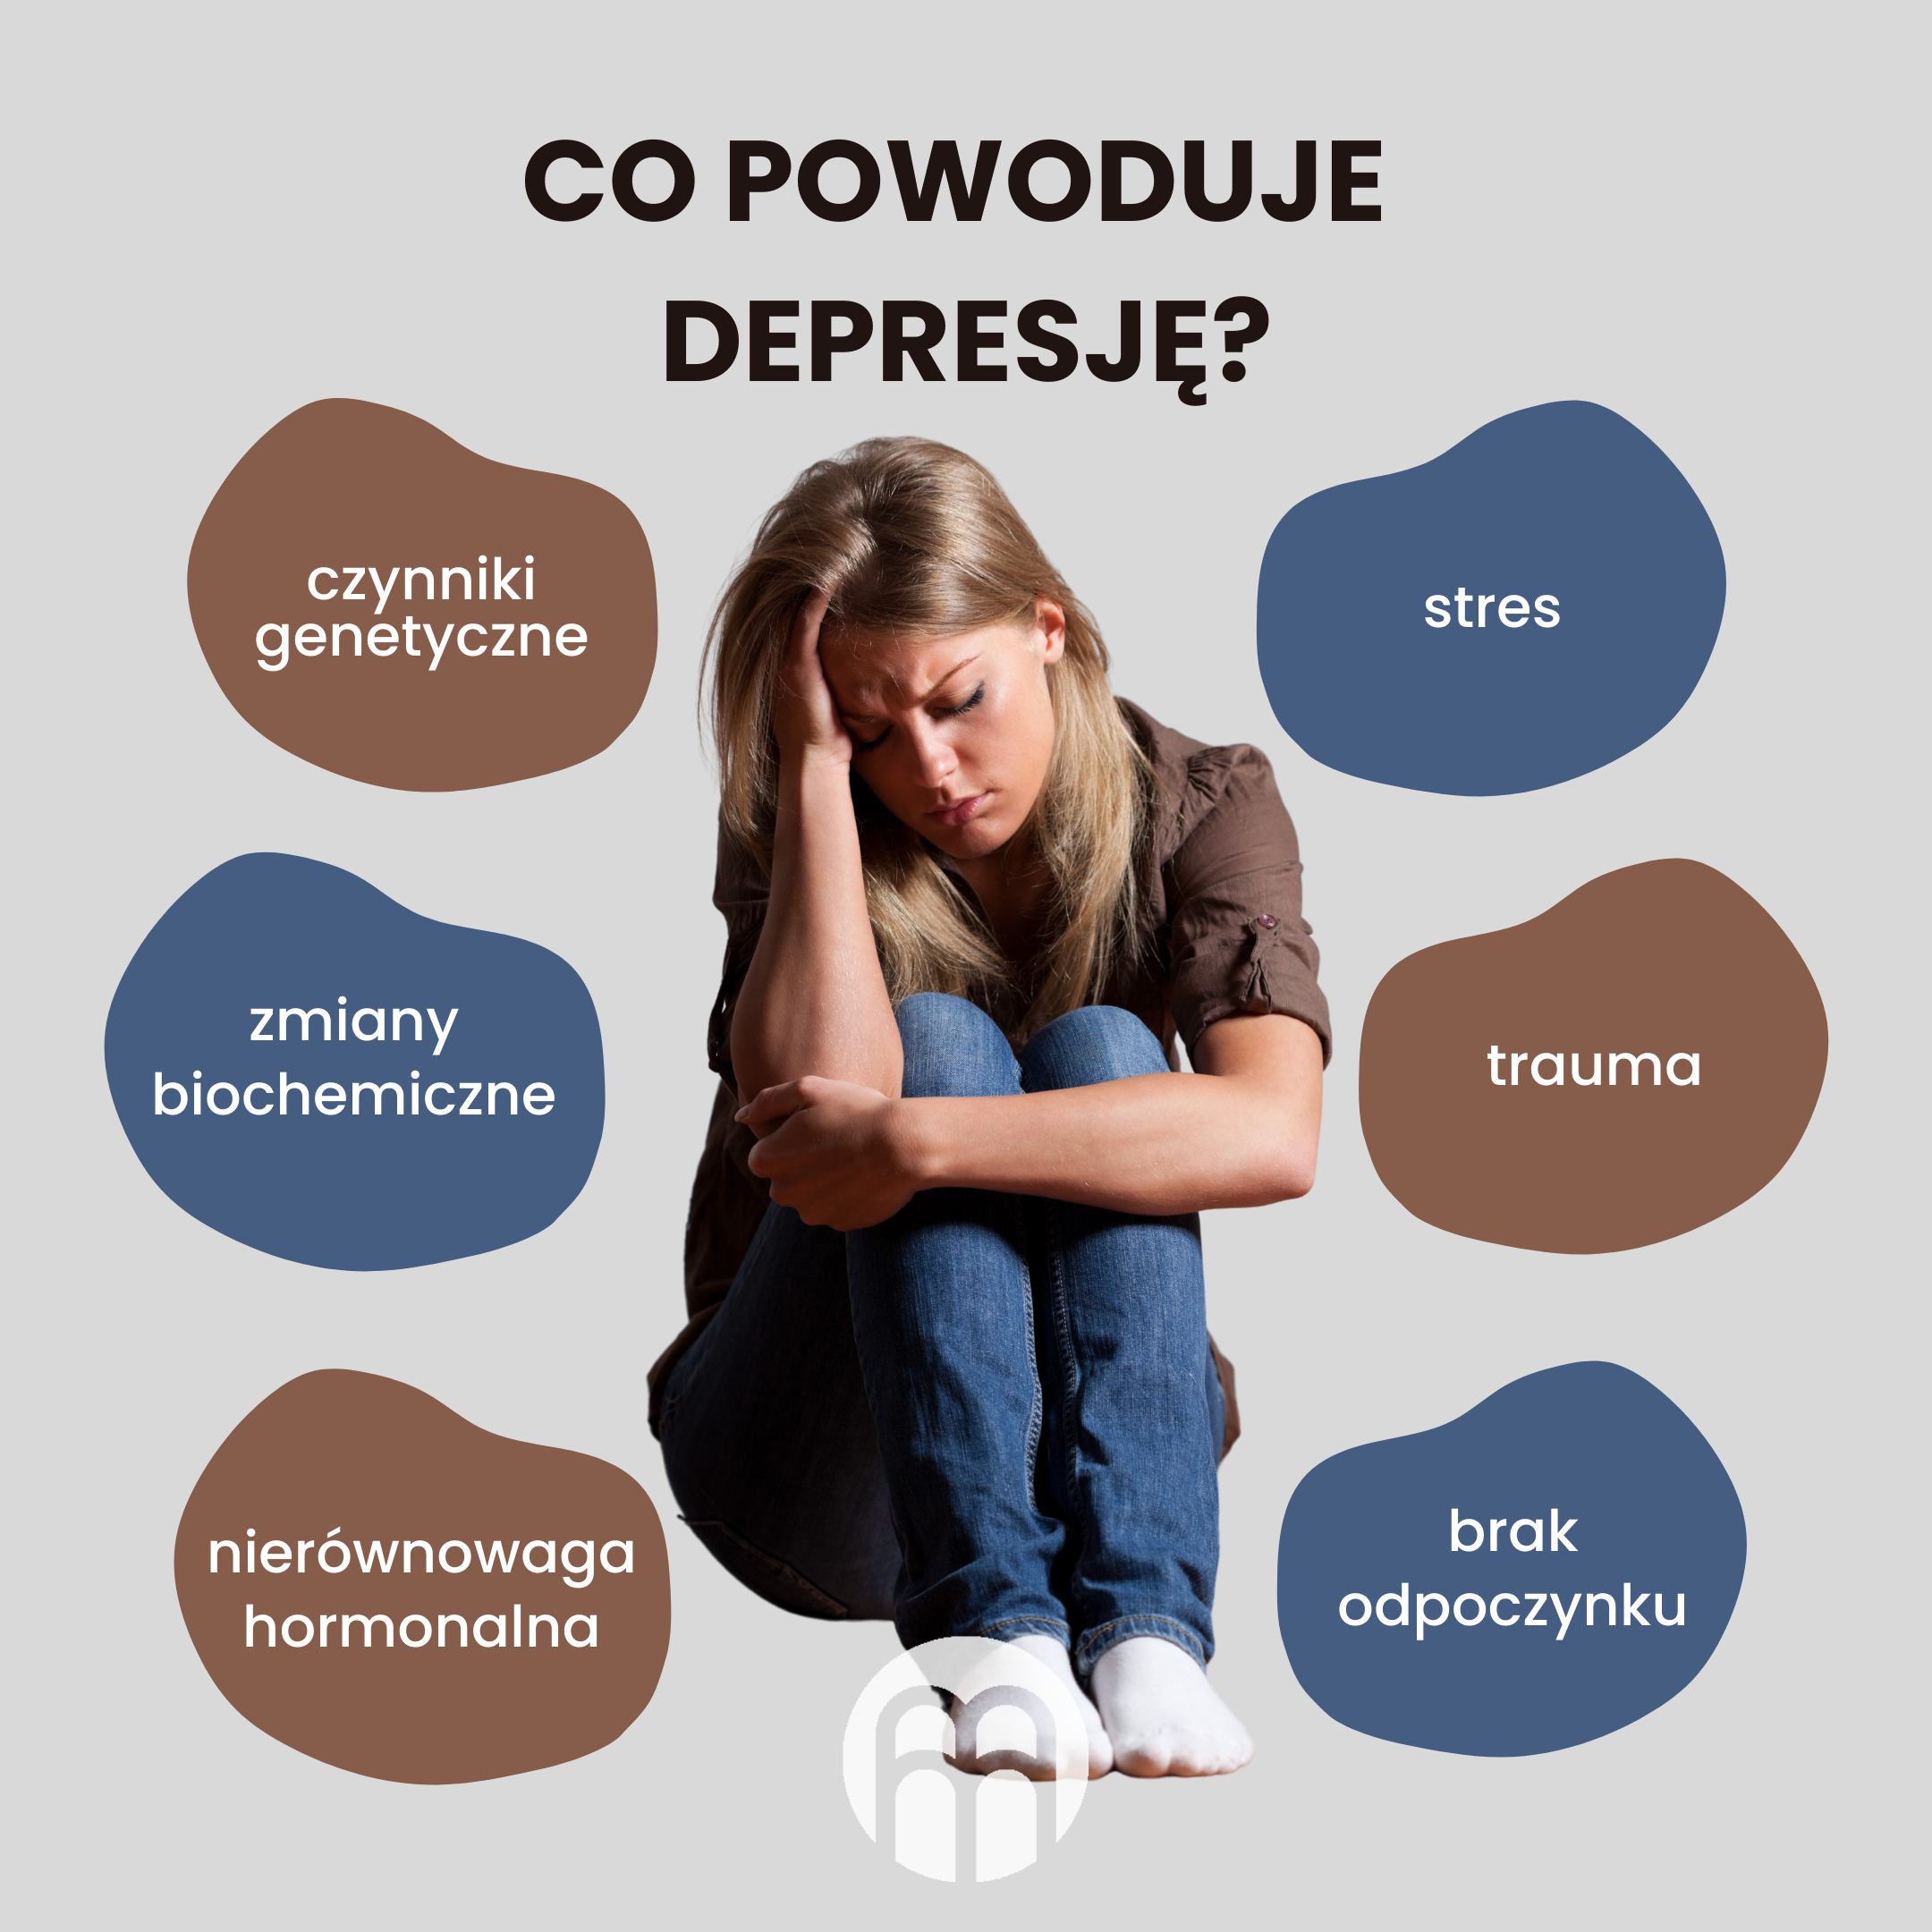 (Polština) Co způsobuje deprese